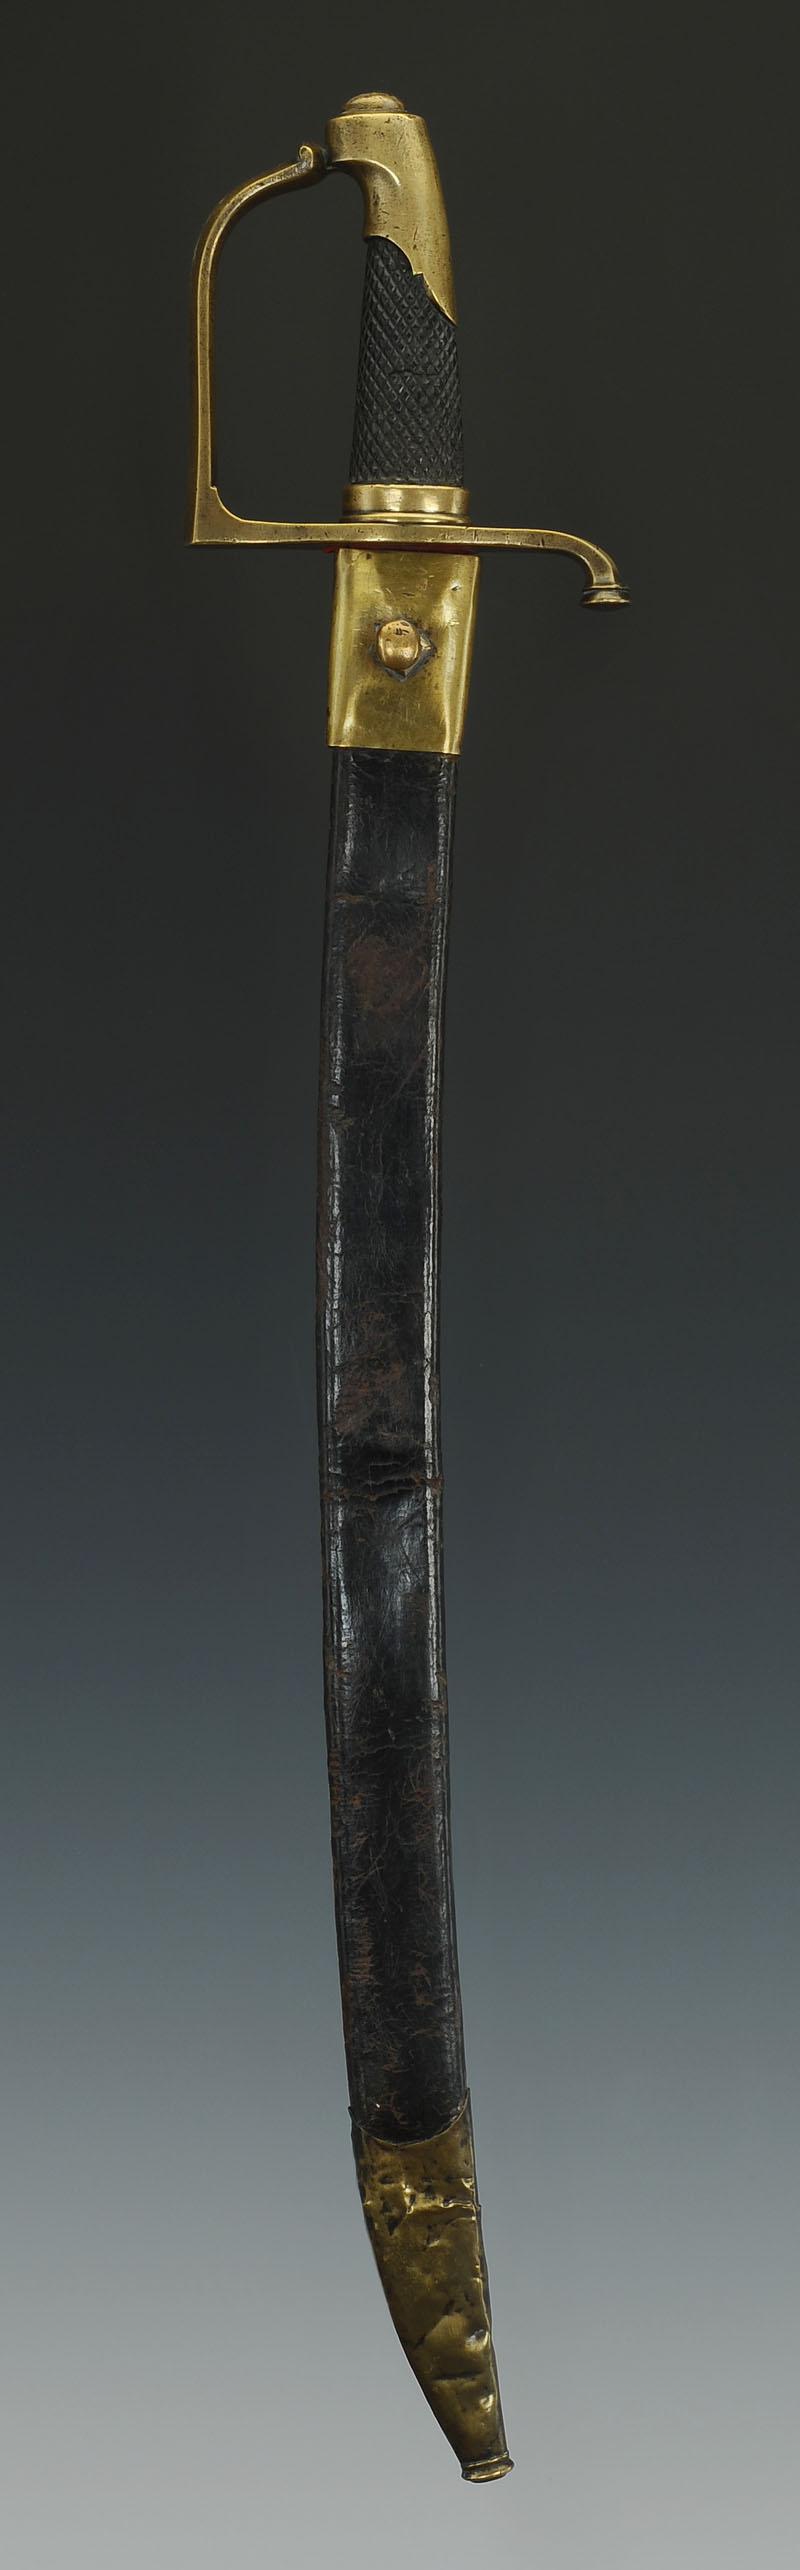 Les sabres briquets 2nde partie : de l'an IX à 1854 - Page 3 Produit_image1_25468_1477474193